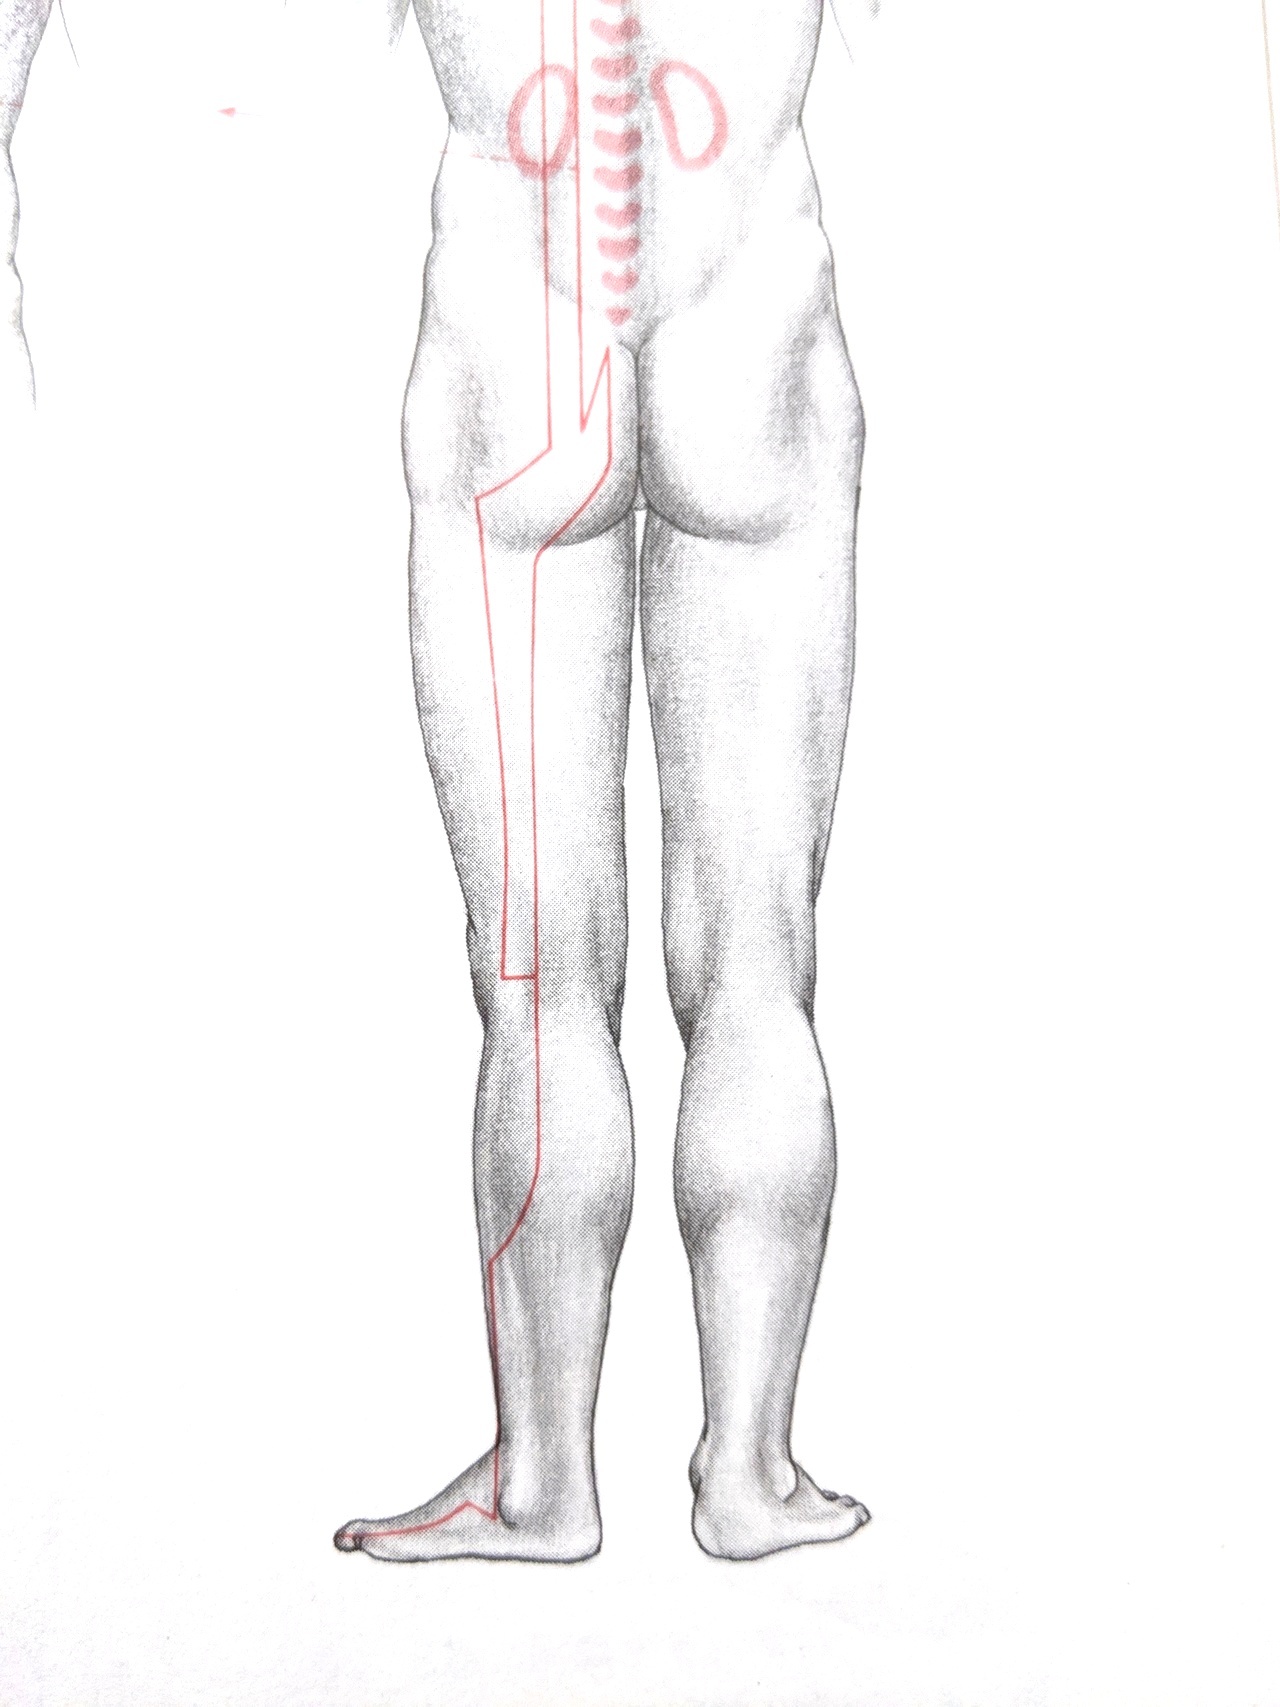 脊柱管狭窄症のツボ